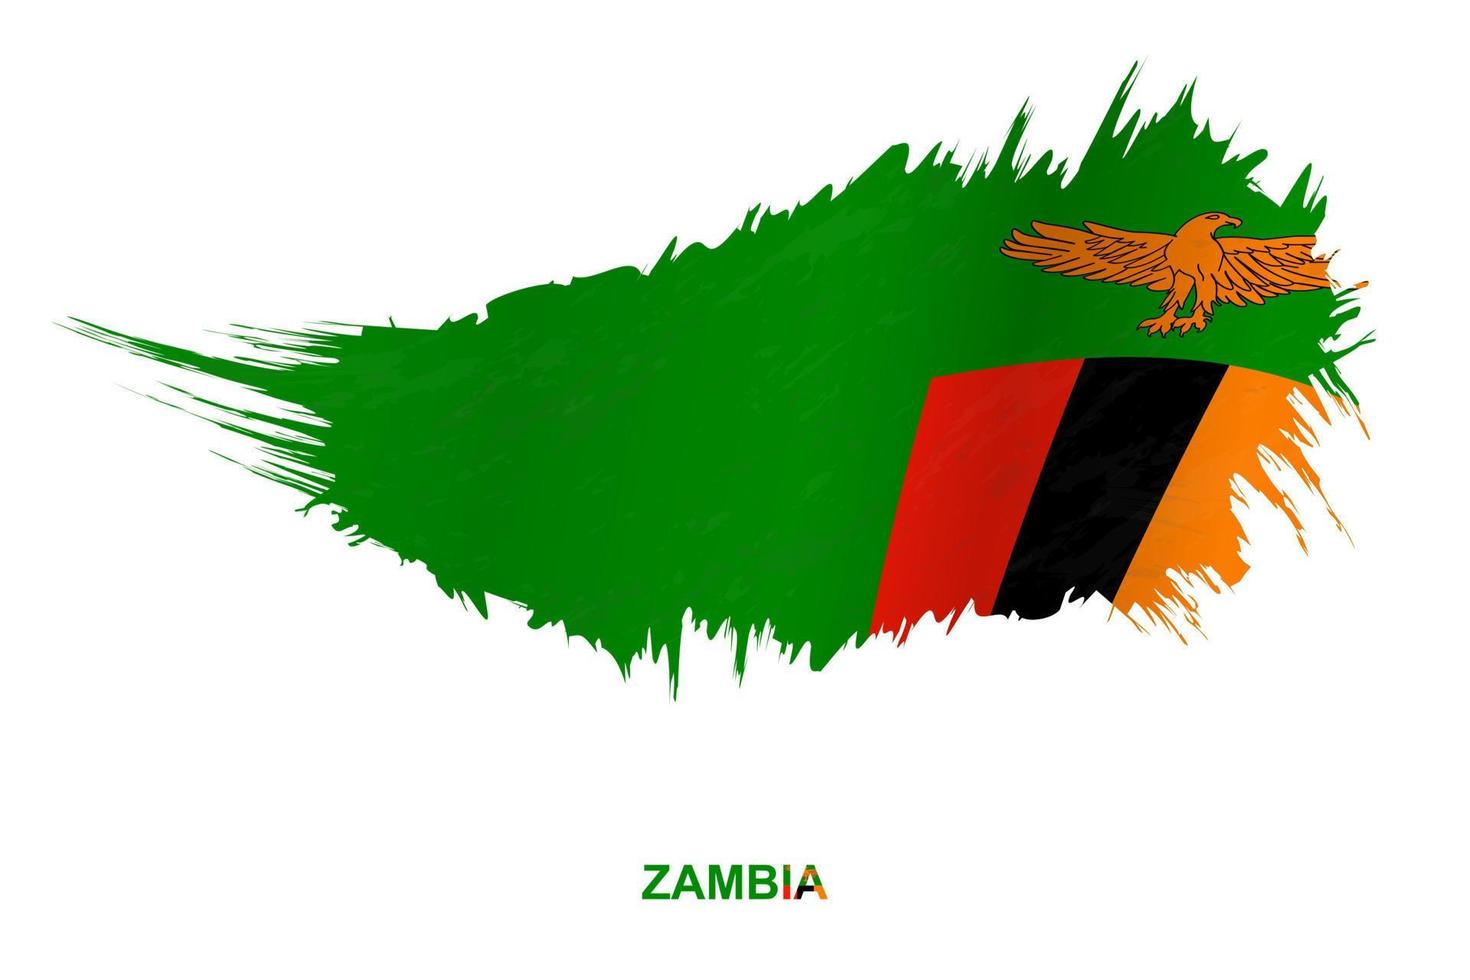 bandera de zambia en estilo grunge con efecto ondulante. vector